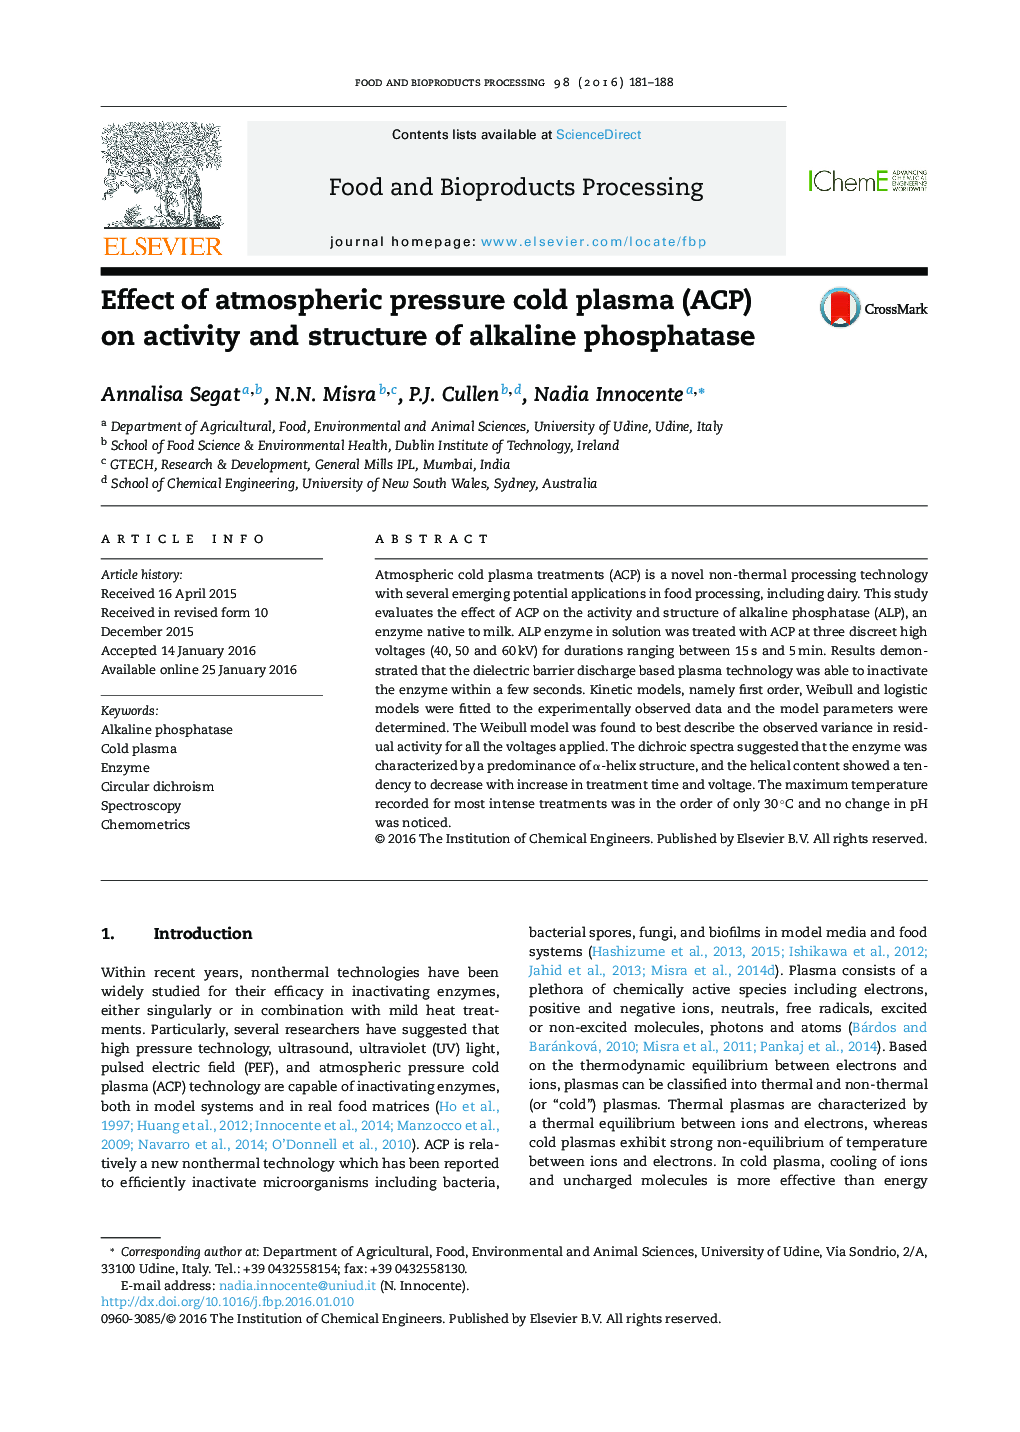 اثر پلاسمای سرد فشار اتمسفری (ACP) بر فعالیت و ساختار آلکالین فسفاتاز